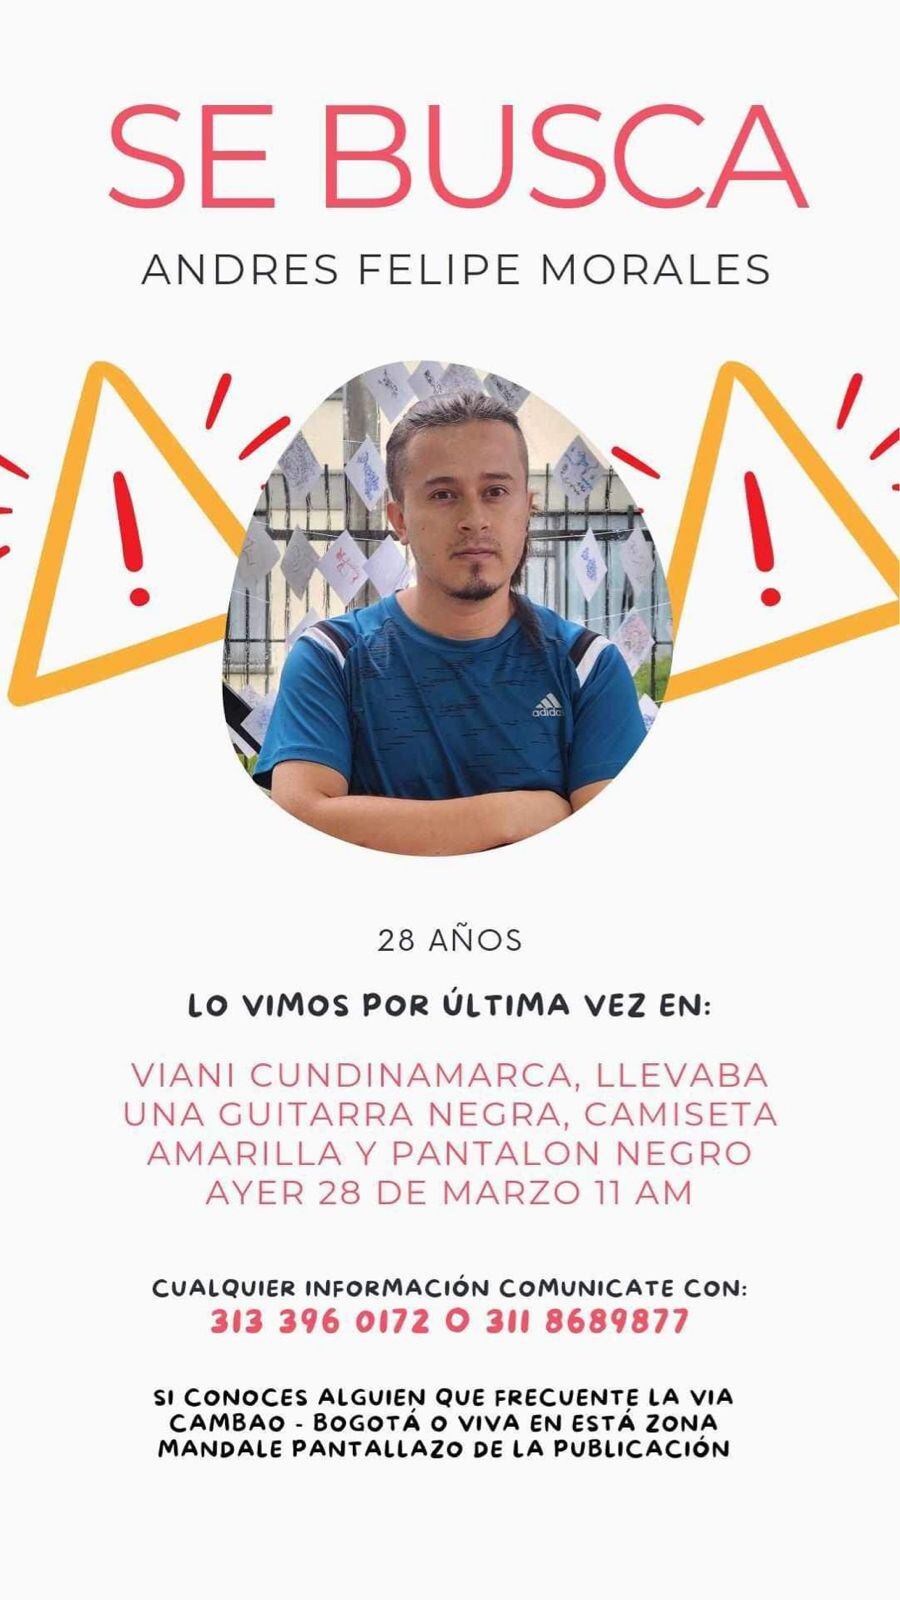 Andrés Felipe Morales fue buscado durante una semana, sin éxito. Fue un habitante de la zona quien reportó el hallazgo del cuerpo el miércoles 3 de abril - crédito redes sociales